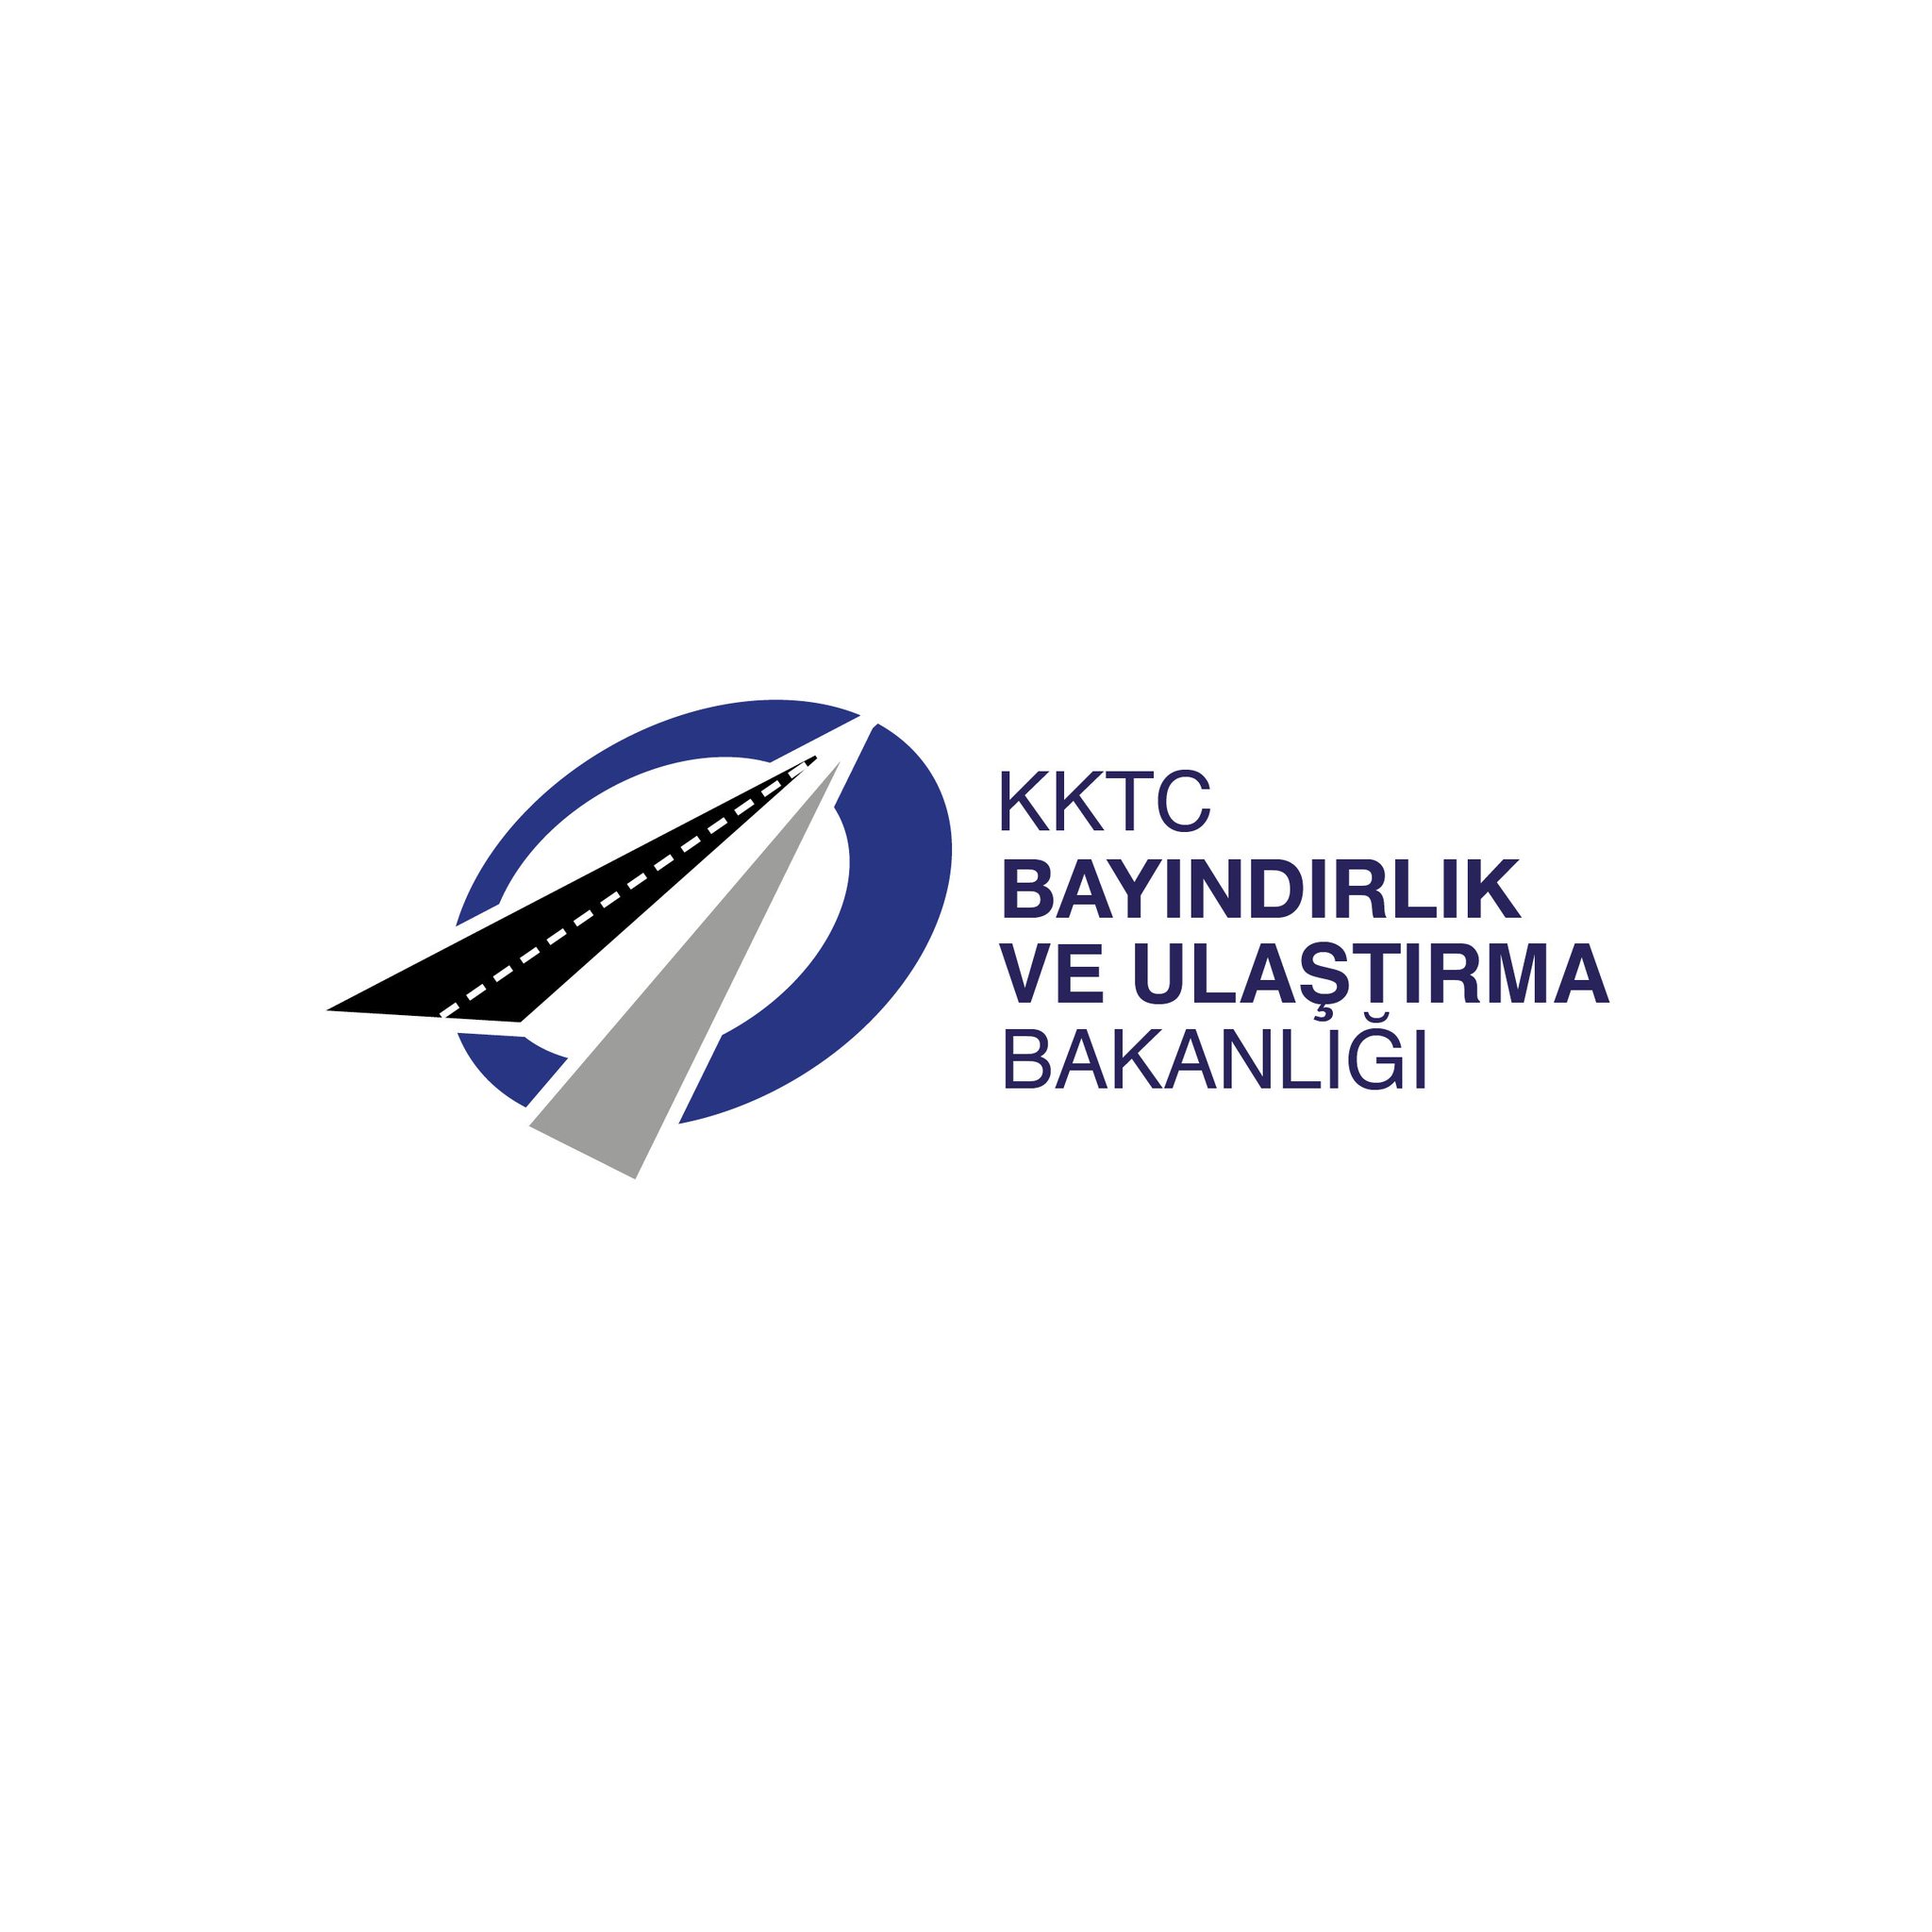 Ulaştırma Bakanlığı Duyurdu: “Lefkoşa ve Girne’deki Daireler 09.00 – 12.00 Arası Açık”